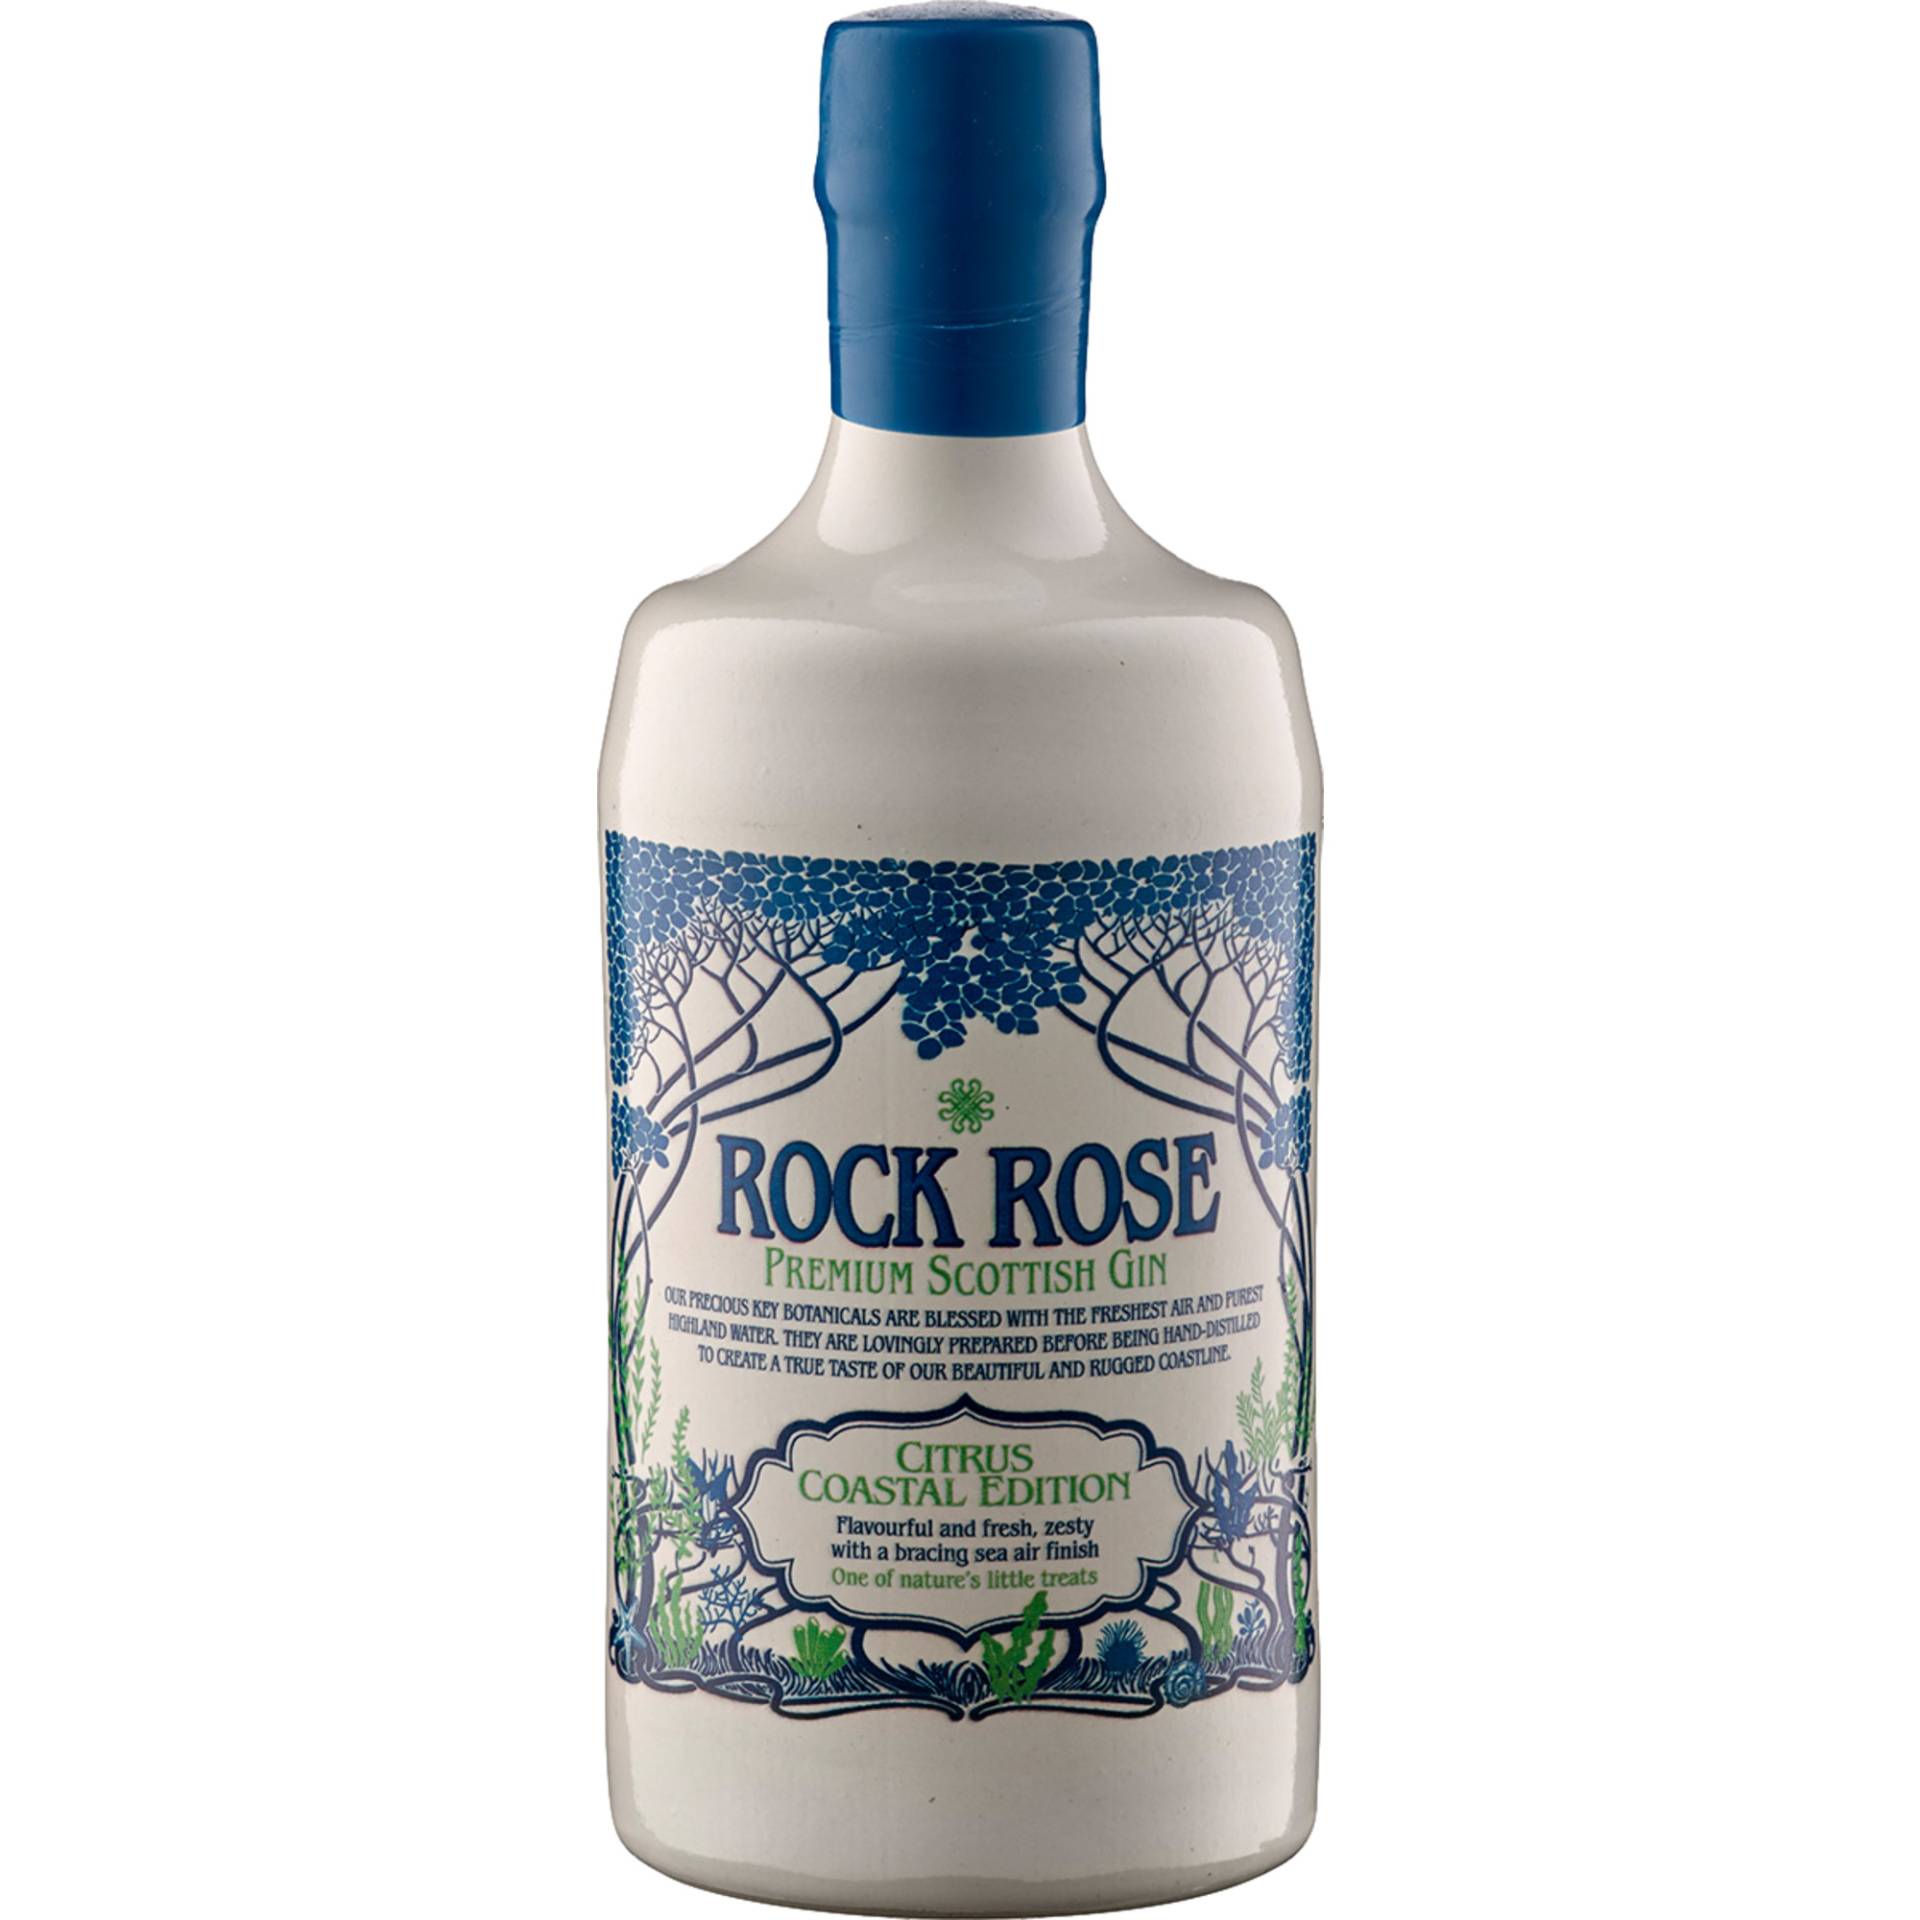 Rock Rose Premium Scottish Gin, Citrus Coastal Edition, 41,5%, 0,7 L, Schottland, Spirituosen von Dunnet Bay Distillers Ltd. ,   GB KW14 8YD Thurso